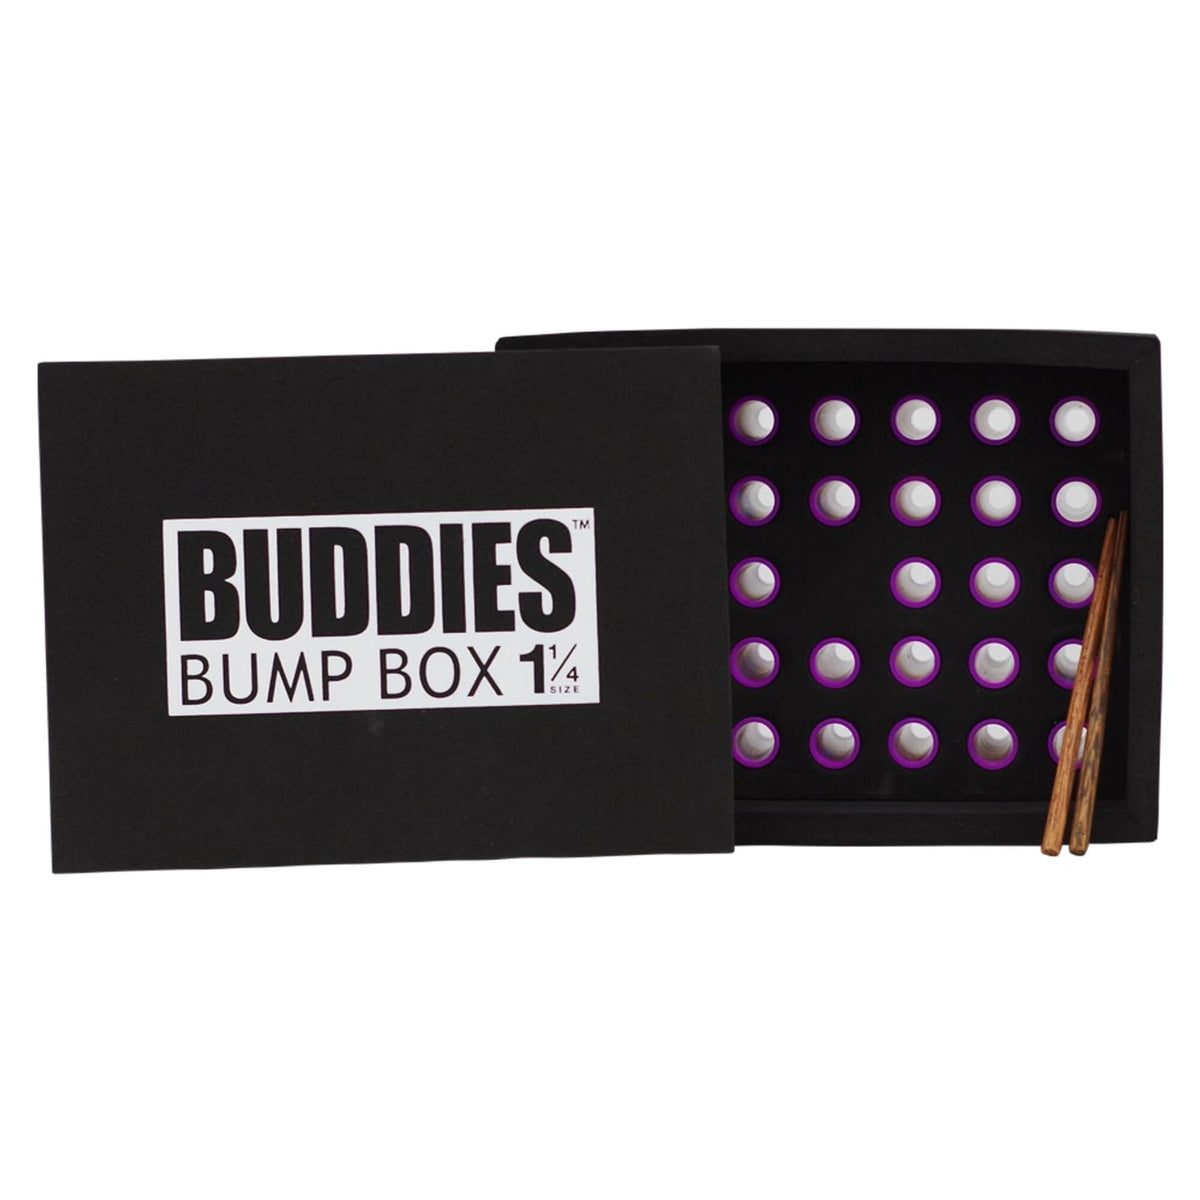 Buddies Bump Box 1 1/4 84mm - Supply Natural